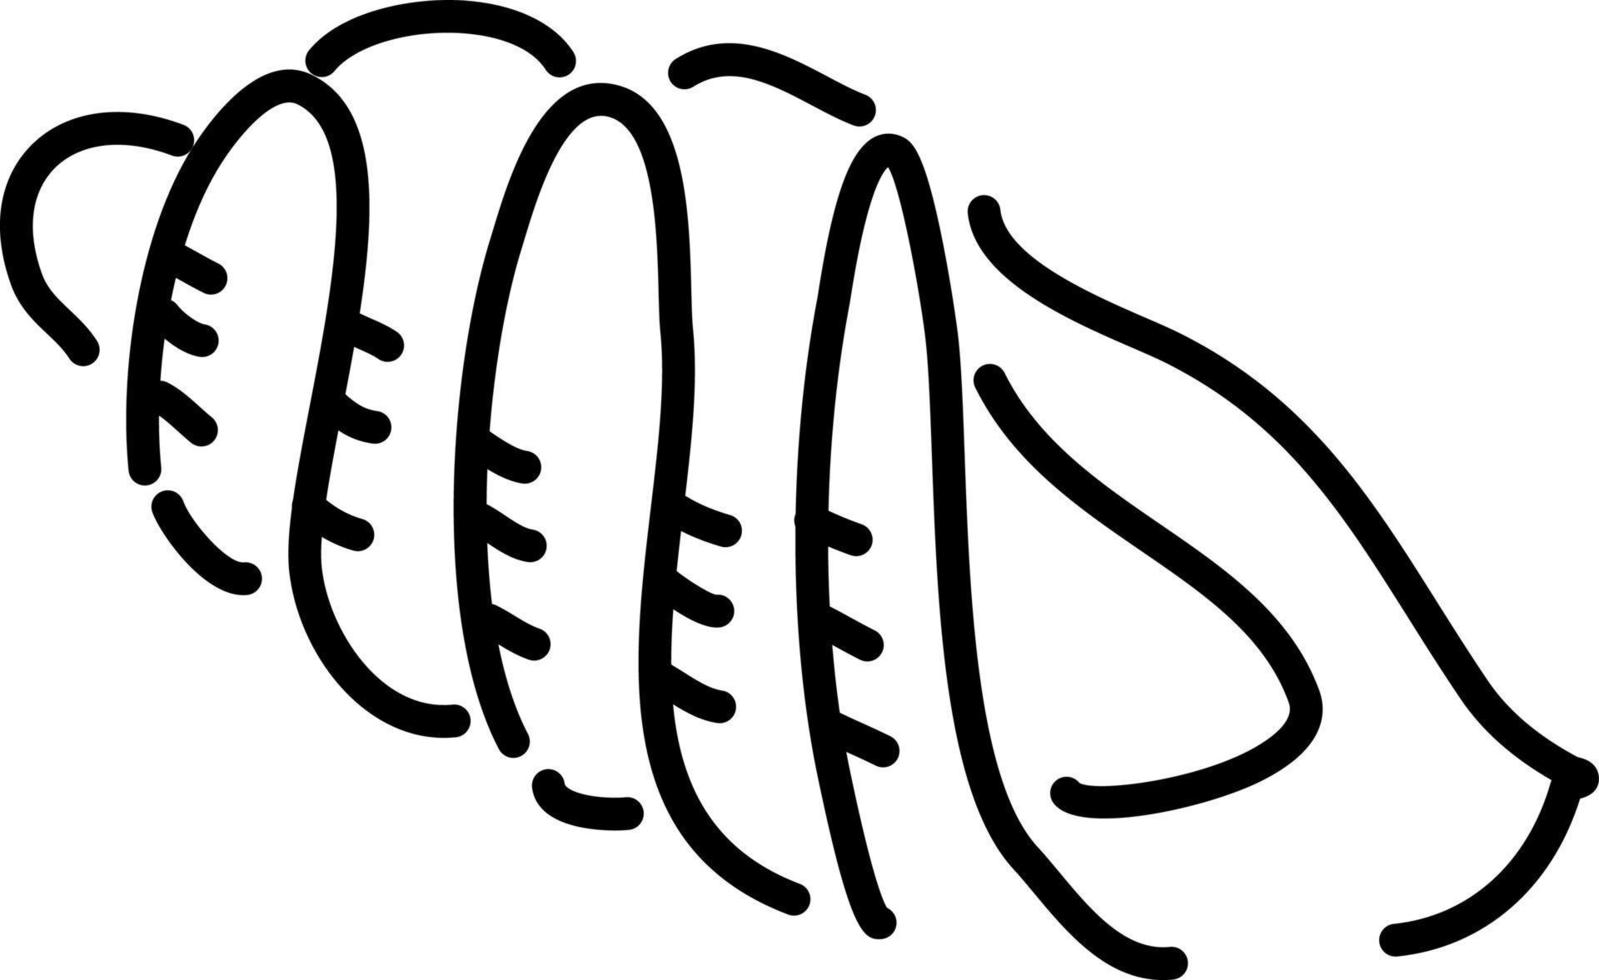 Concha de mar largo, ilustración, vector sobre un fondo blanco.